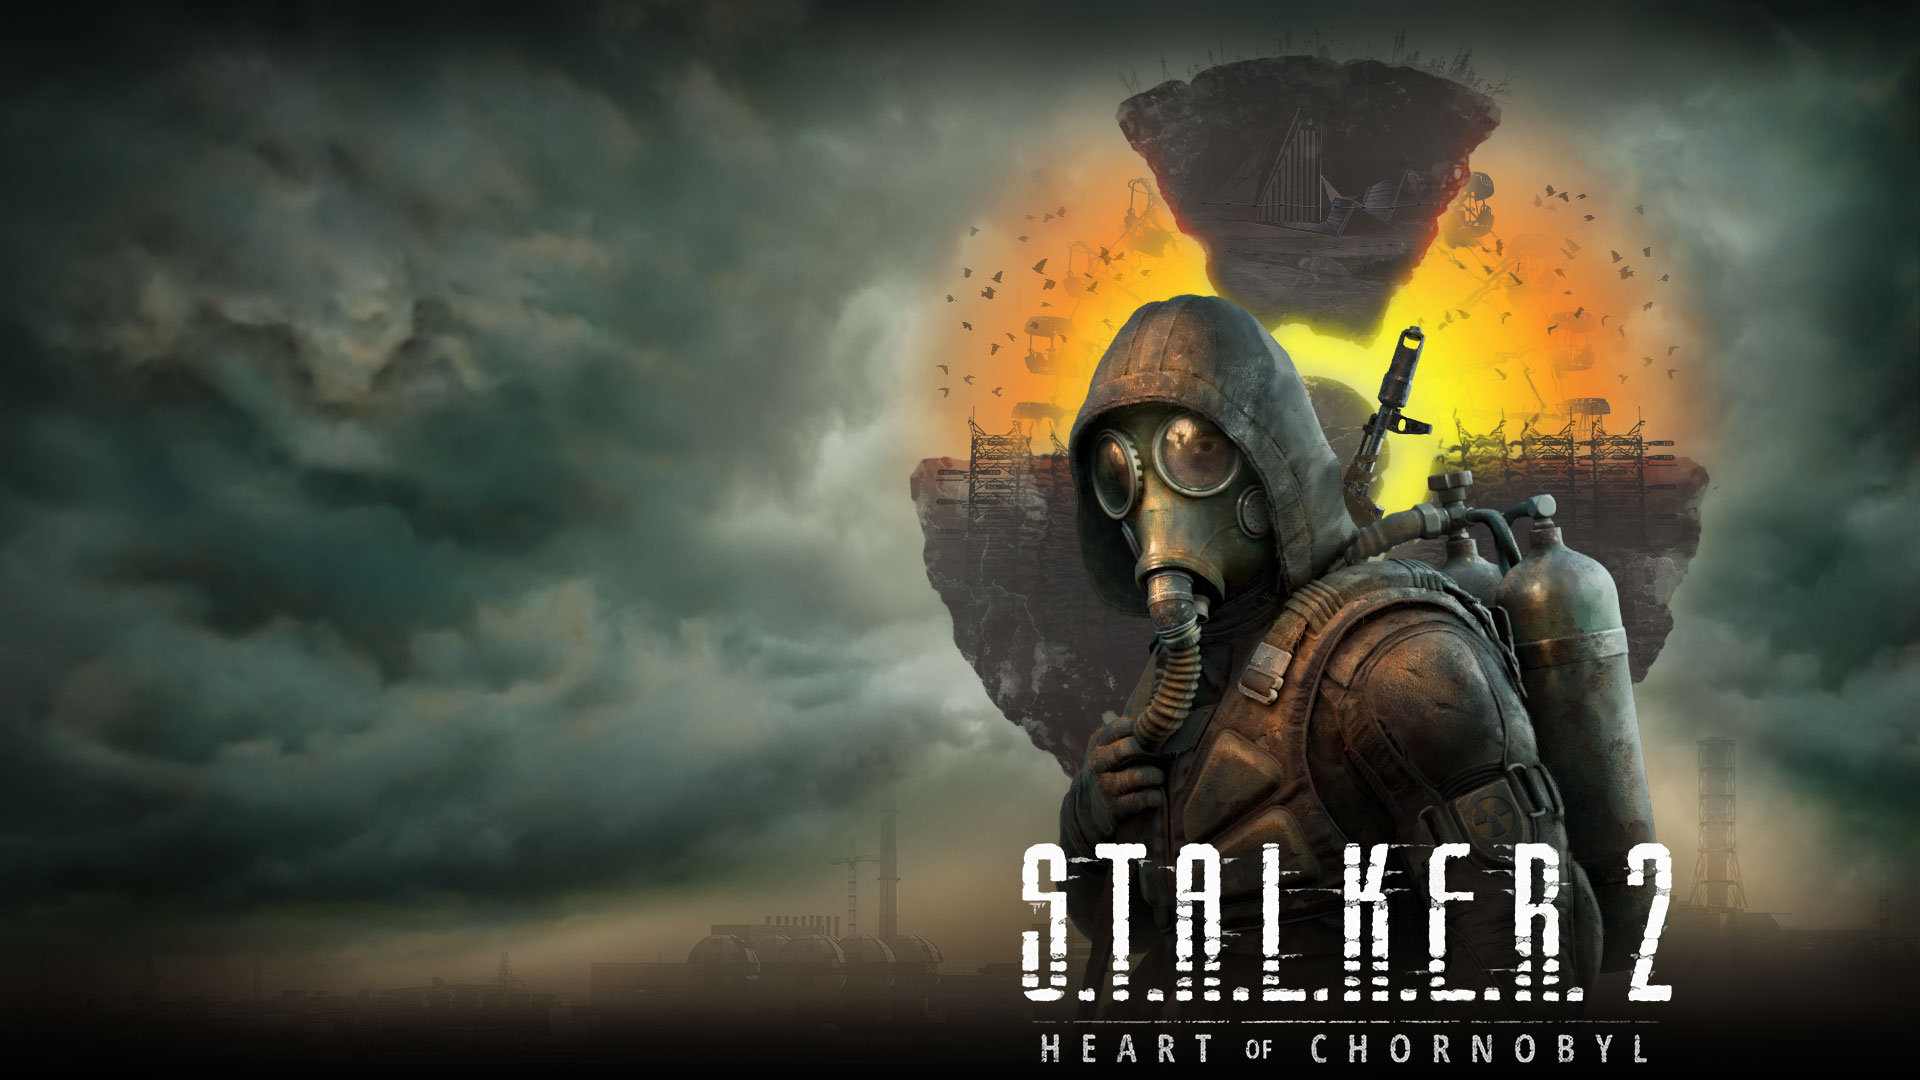 Stalker 2 Heart of Chornobyl, un personaje se para frente a un paisaje flotante con nubes y humo en el aire.